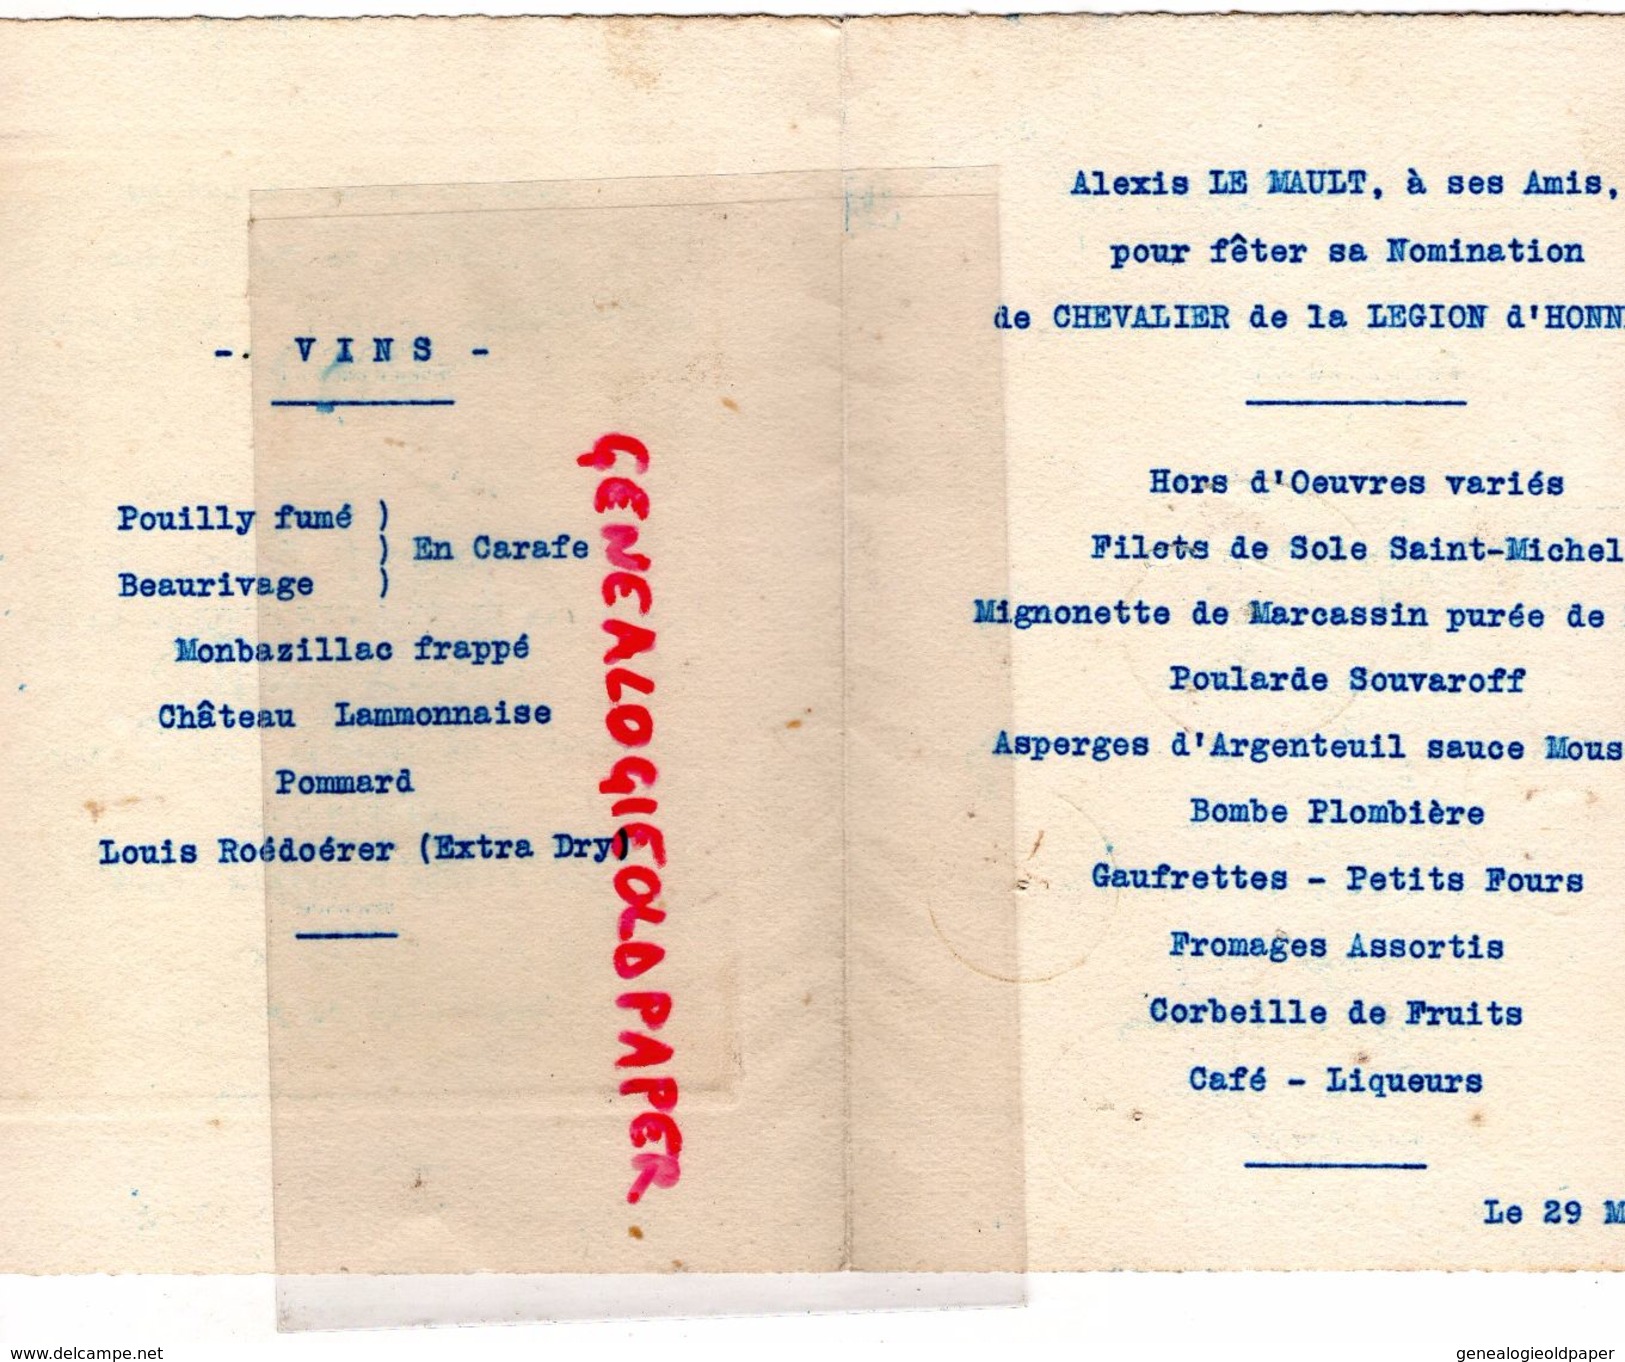 75- PARIS- RARE MENU RESTAURANT SAINT MICHEL-2 PLACE ST MICHEL-ALEXIS LE MAULT CHEVALIER LEGION HONNEUR-29 MARS 1922- - Menus